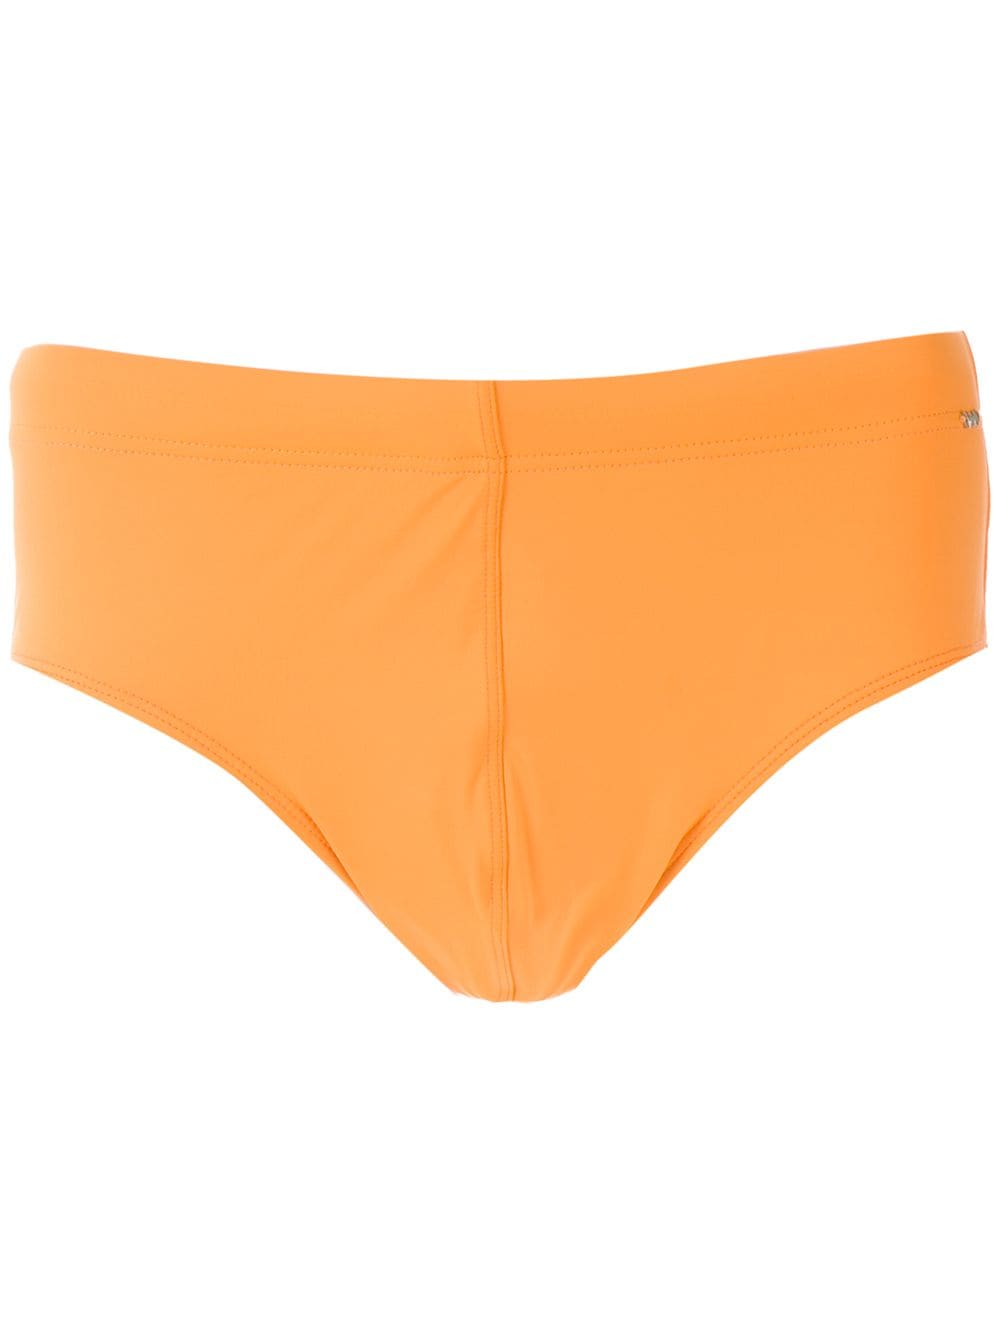 Amir Slama plain trunks - Orange von Amir Slama